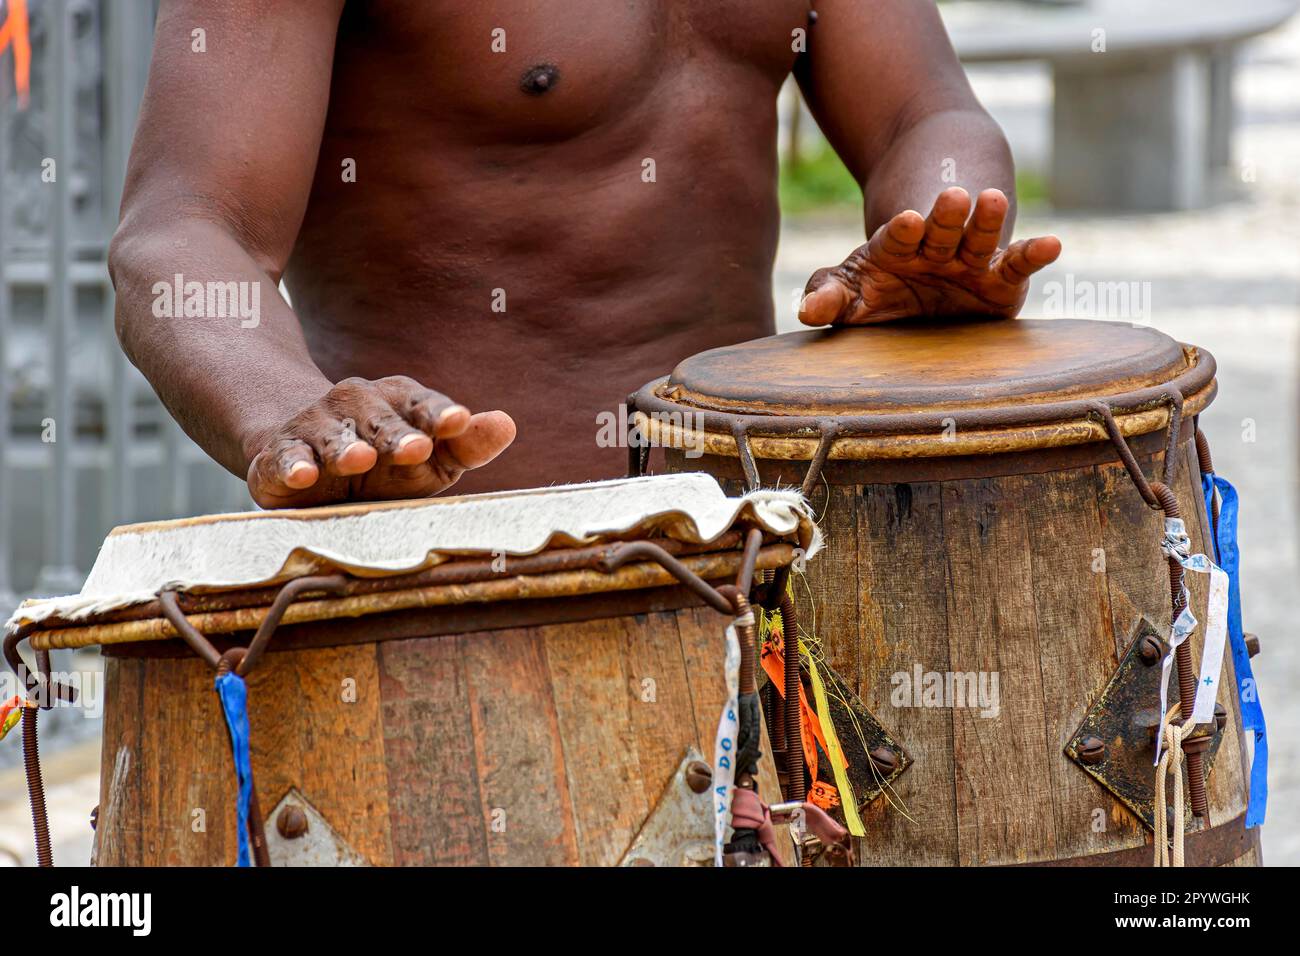 Musiciens jouant des instruments traditionnels utilisés en capoeira, un mélange de combat et de danse de la culture afro-brésilienne, Brésil Banque D'Images